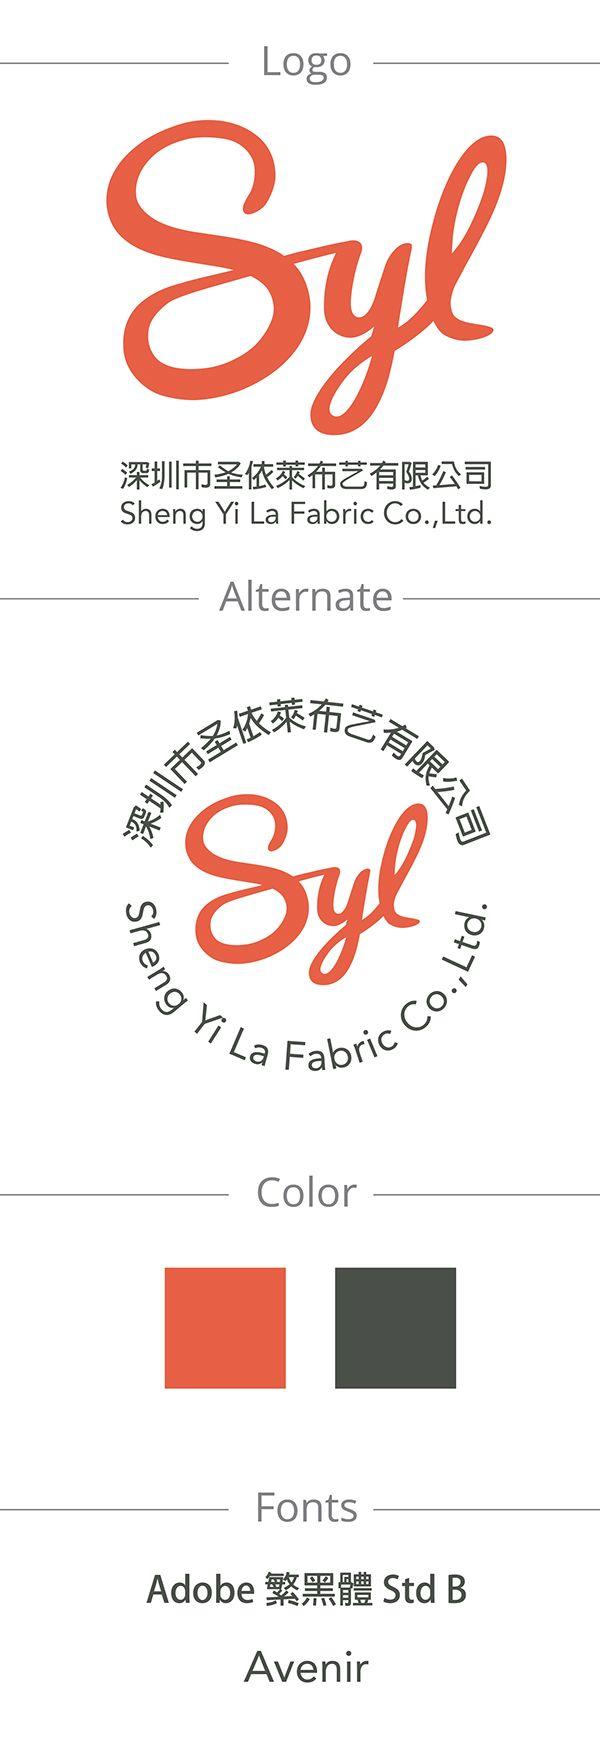 Syl Logo - SYL logo. Portfolio. Brand identity, Company logo, Logos